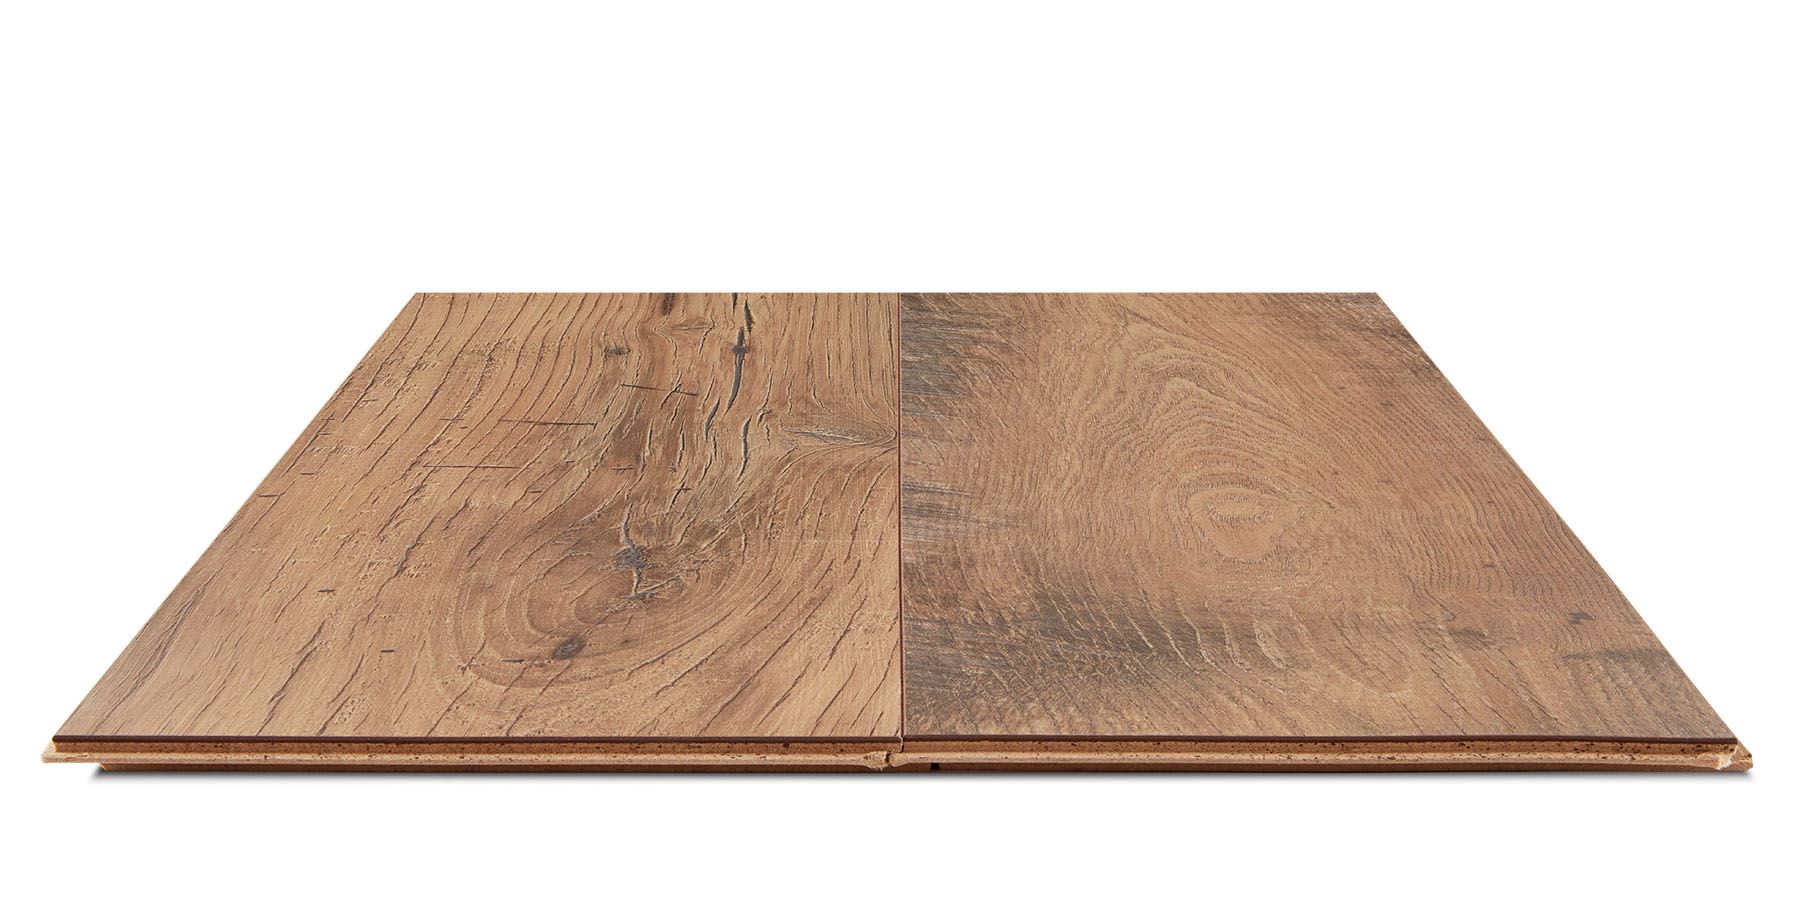 Eastwood Wood Laminate Flooring